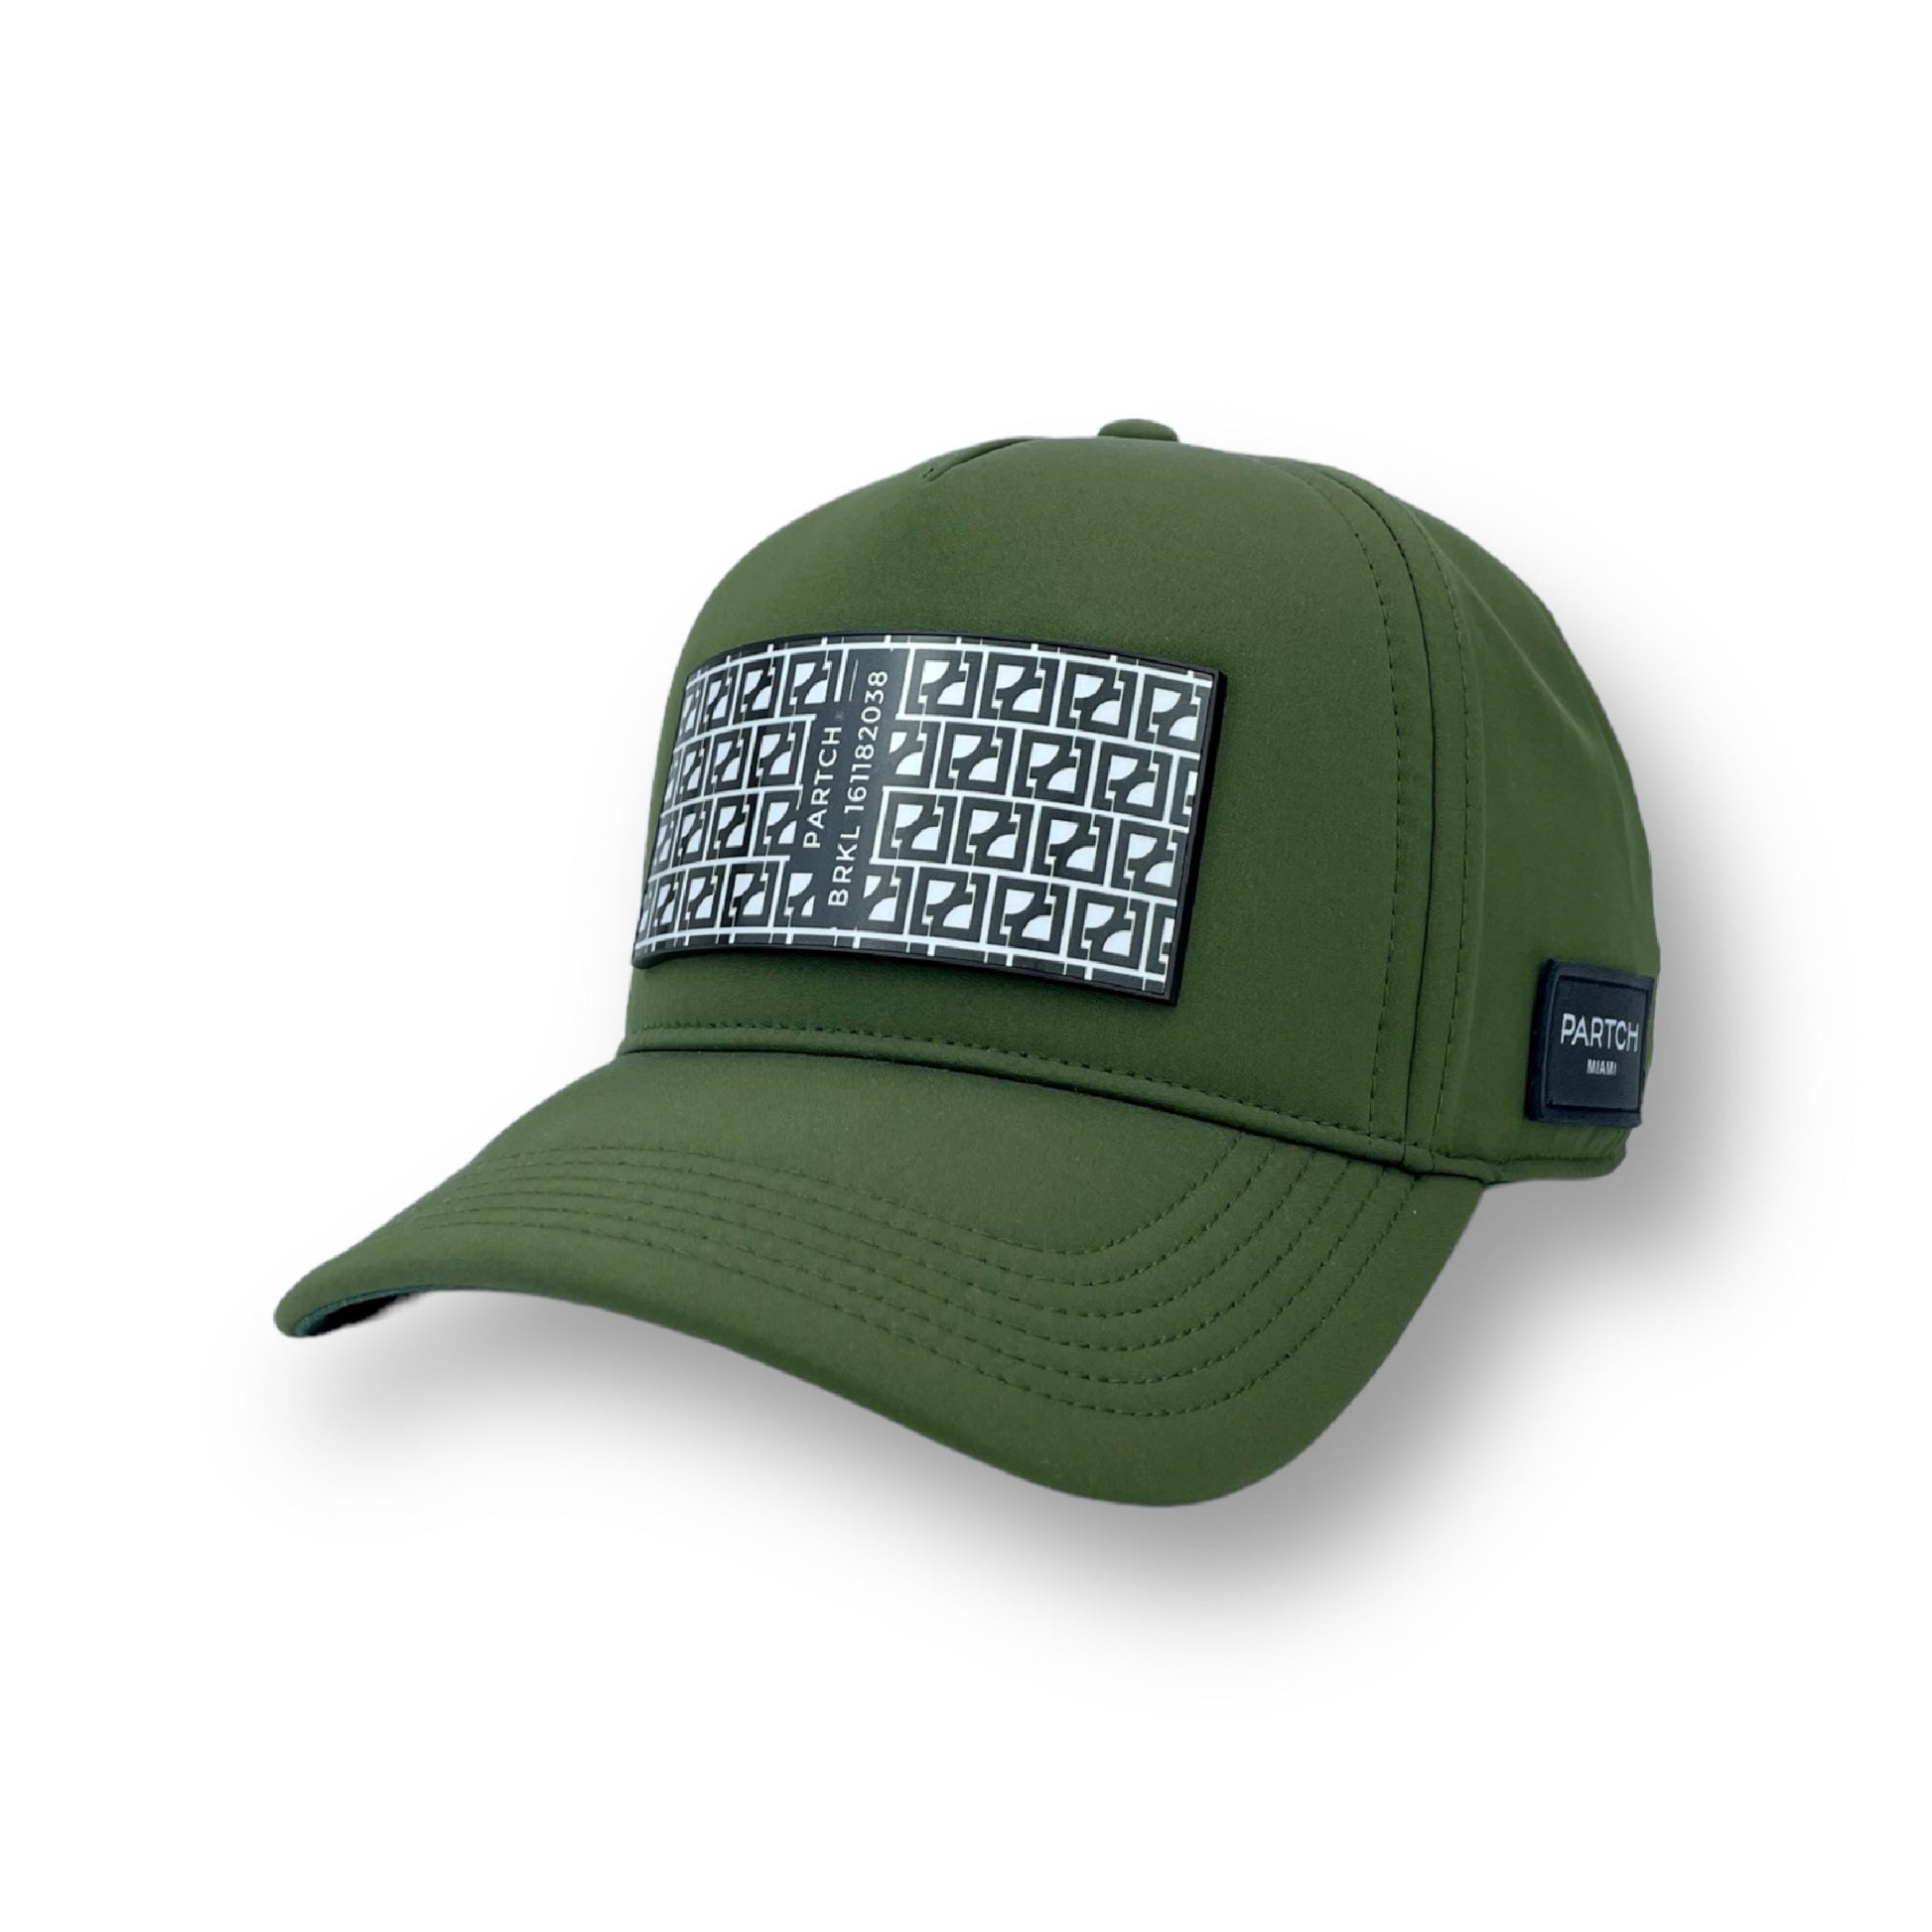 Partch BRKL trucker hat front Partch-clip removable patch